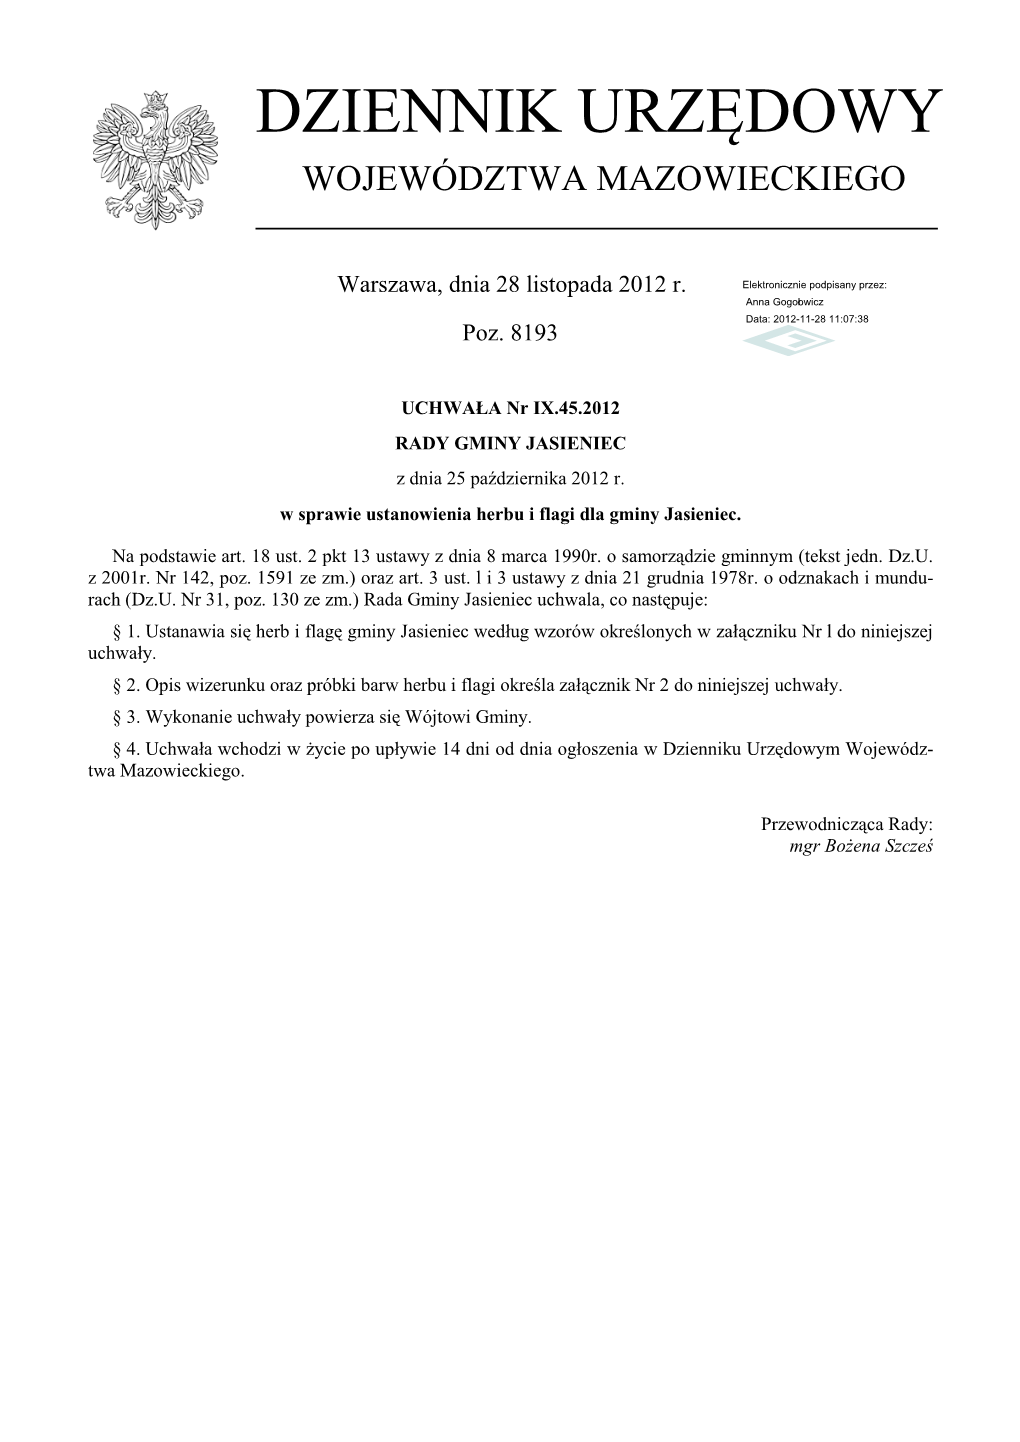 Uchwała Nr IX.45.2012 Z Dnia 25 Października 2012 R